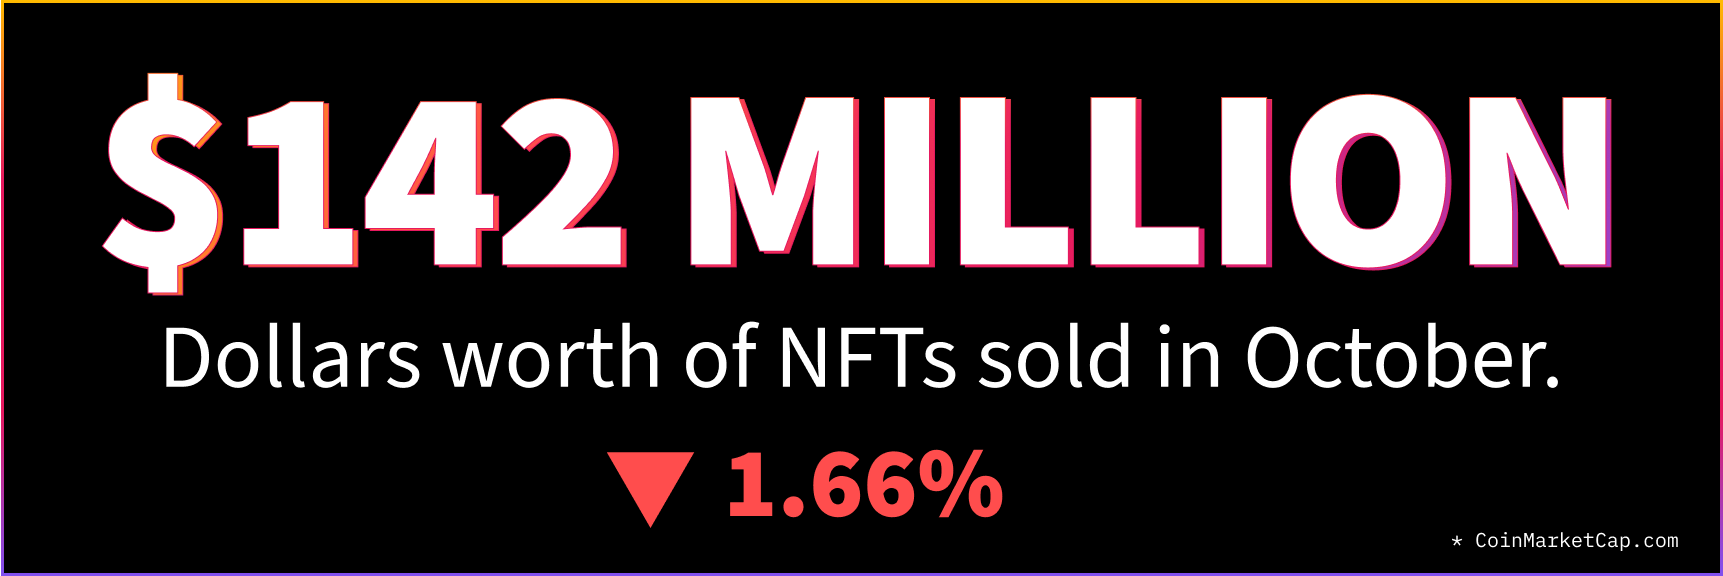 October NFT Stats & News